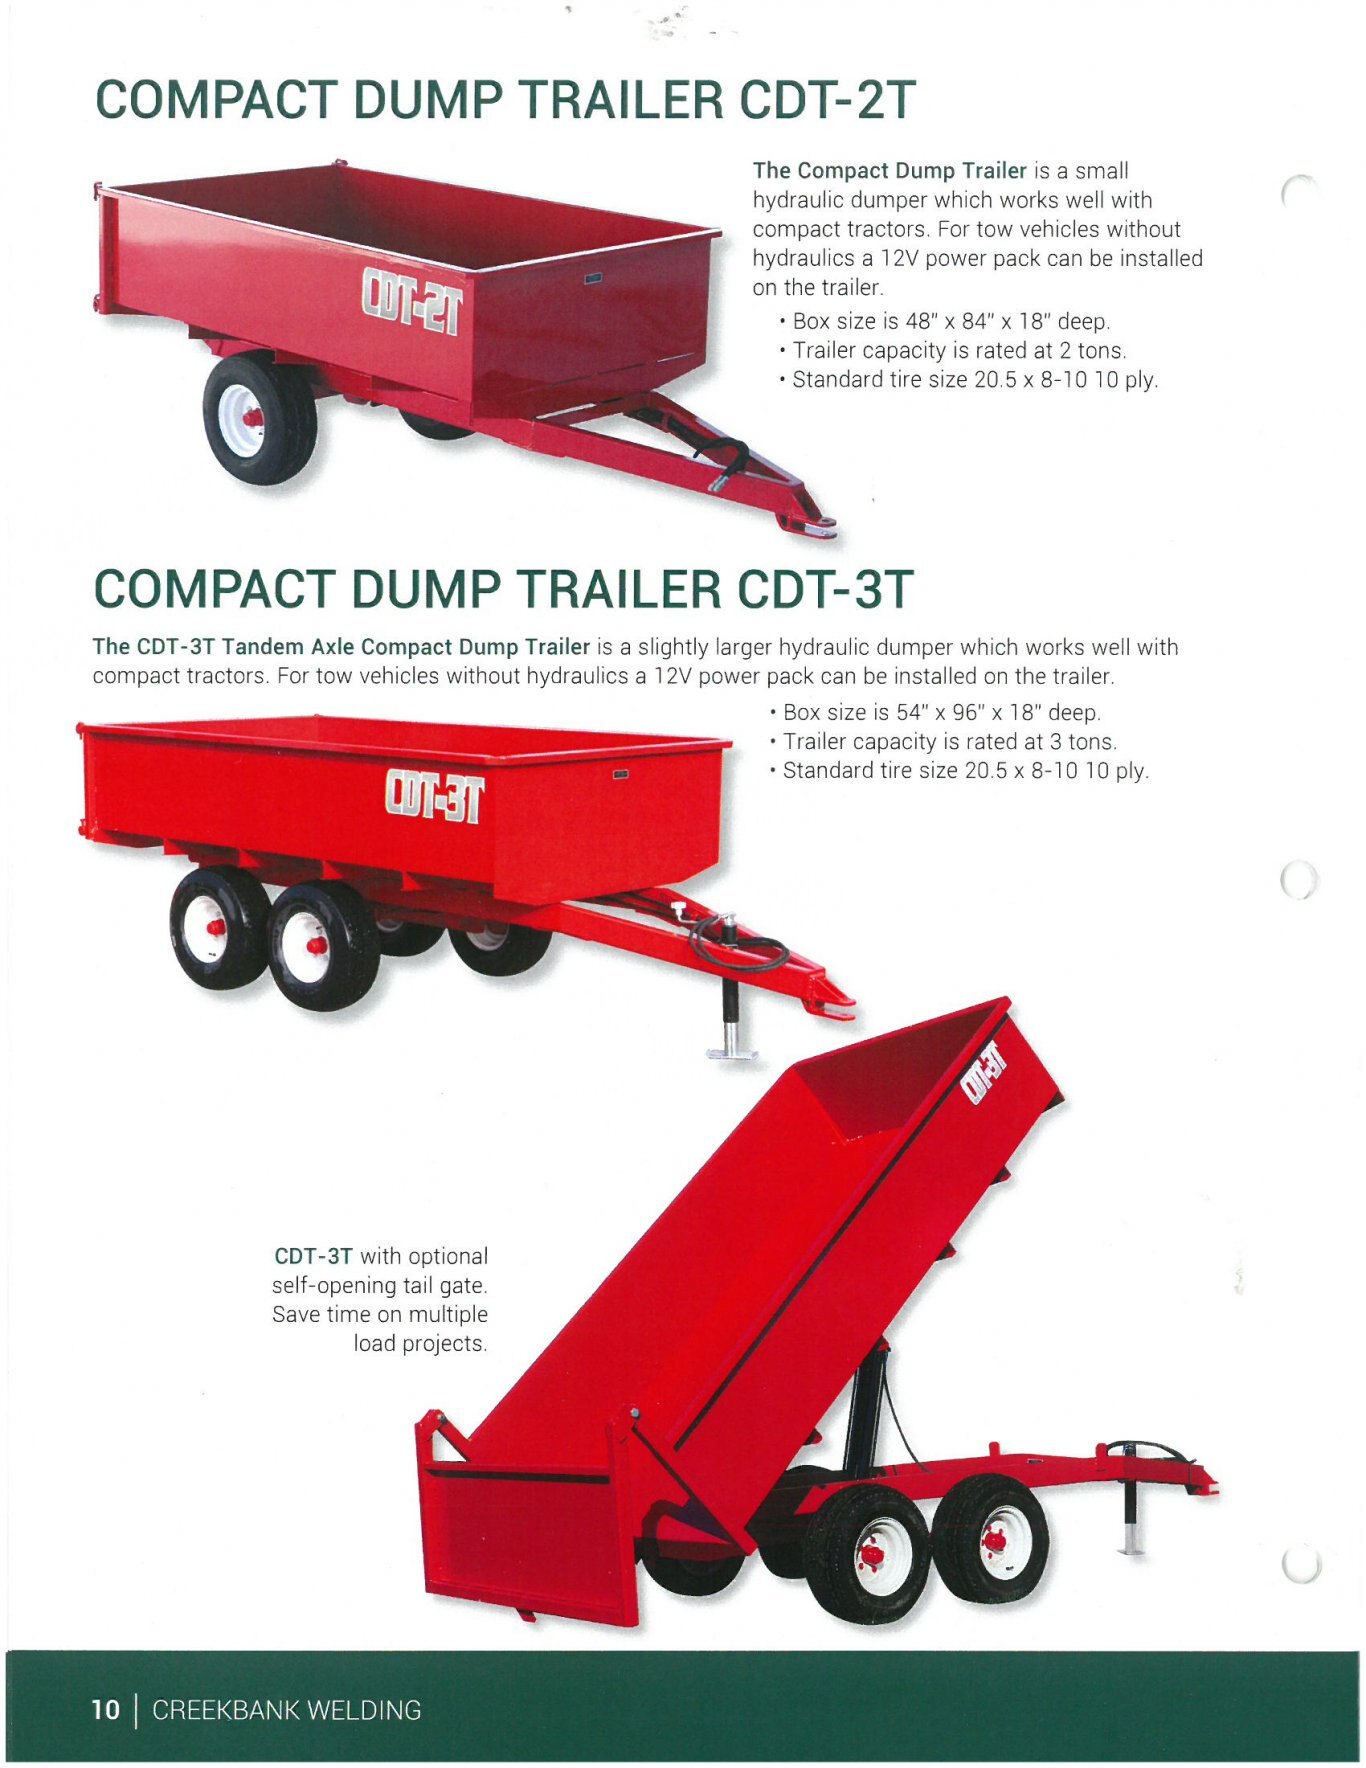 Creekbank Welding (cdt) compact dump trailers